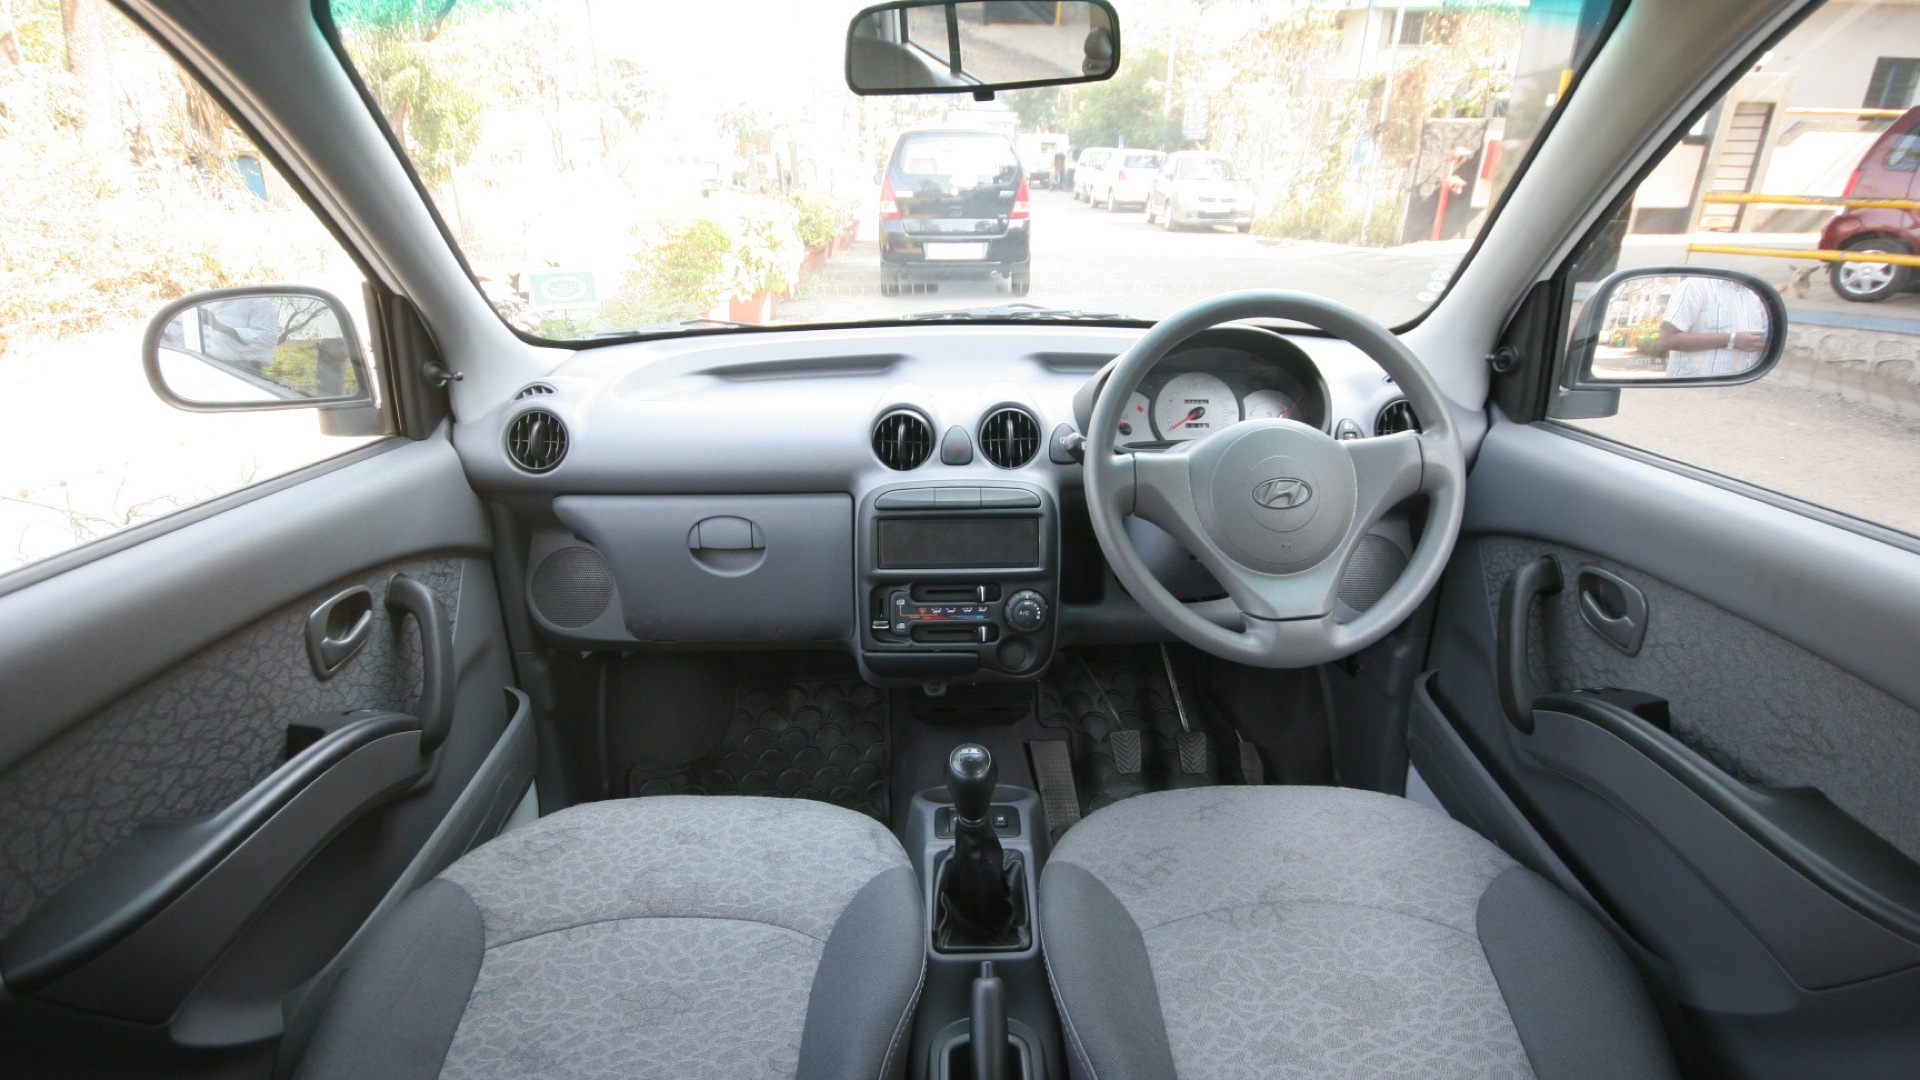 Hyundai-Santro-2012-Non-A/c-Interior